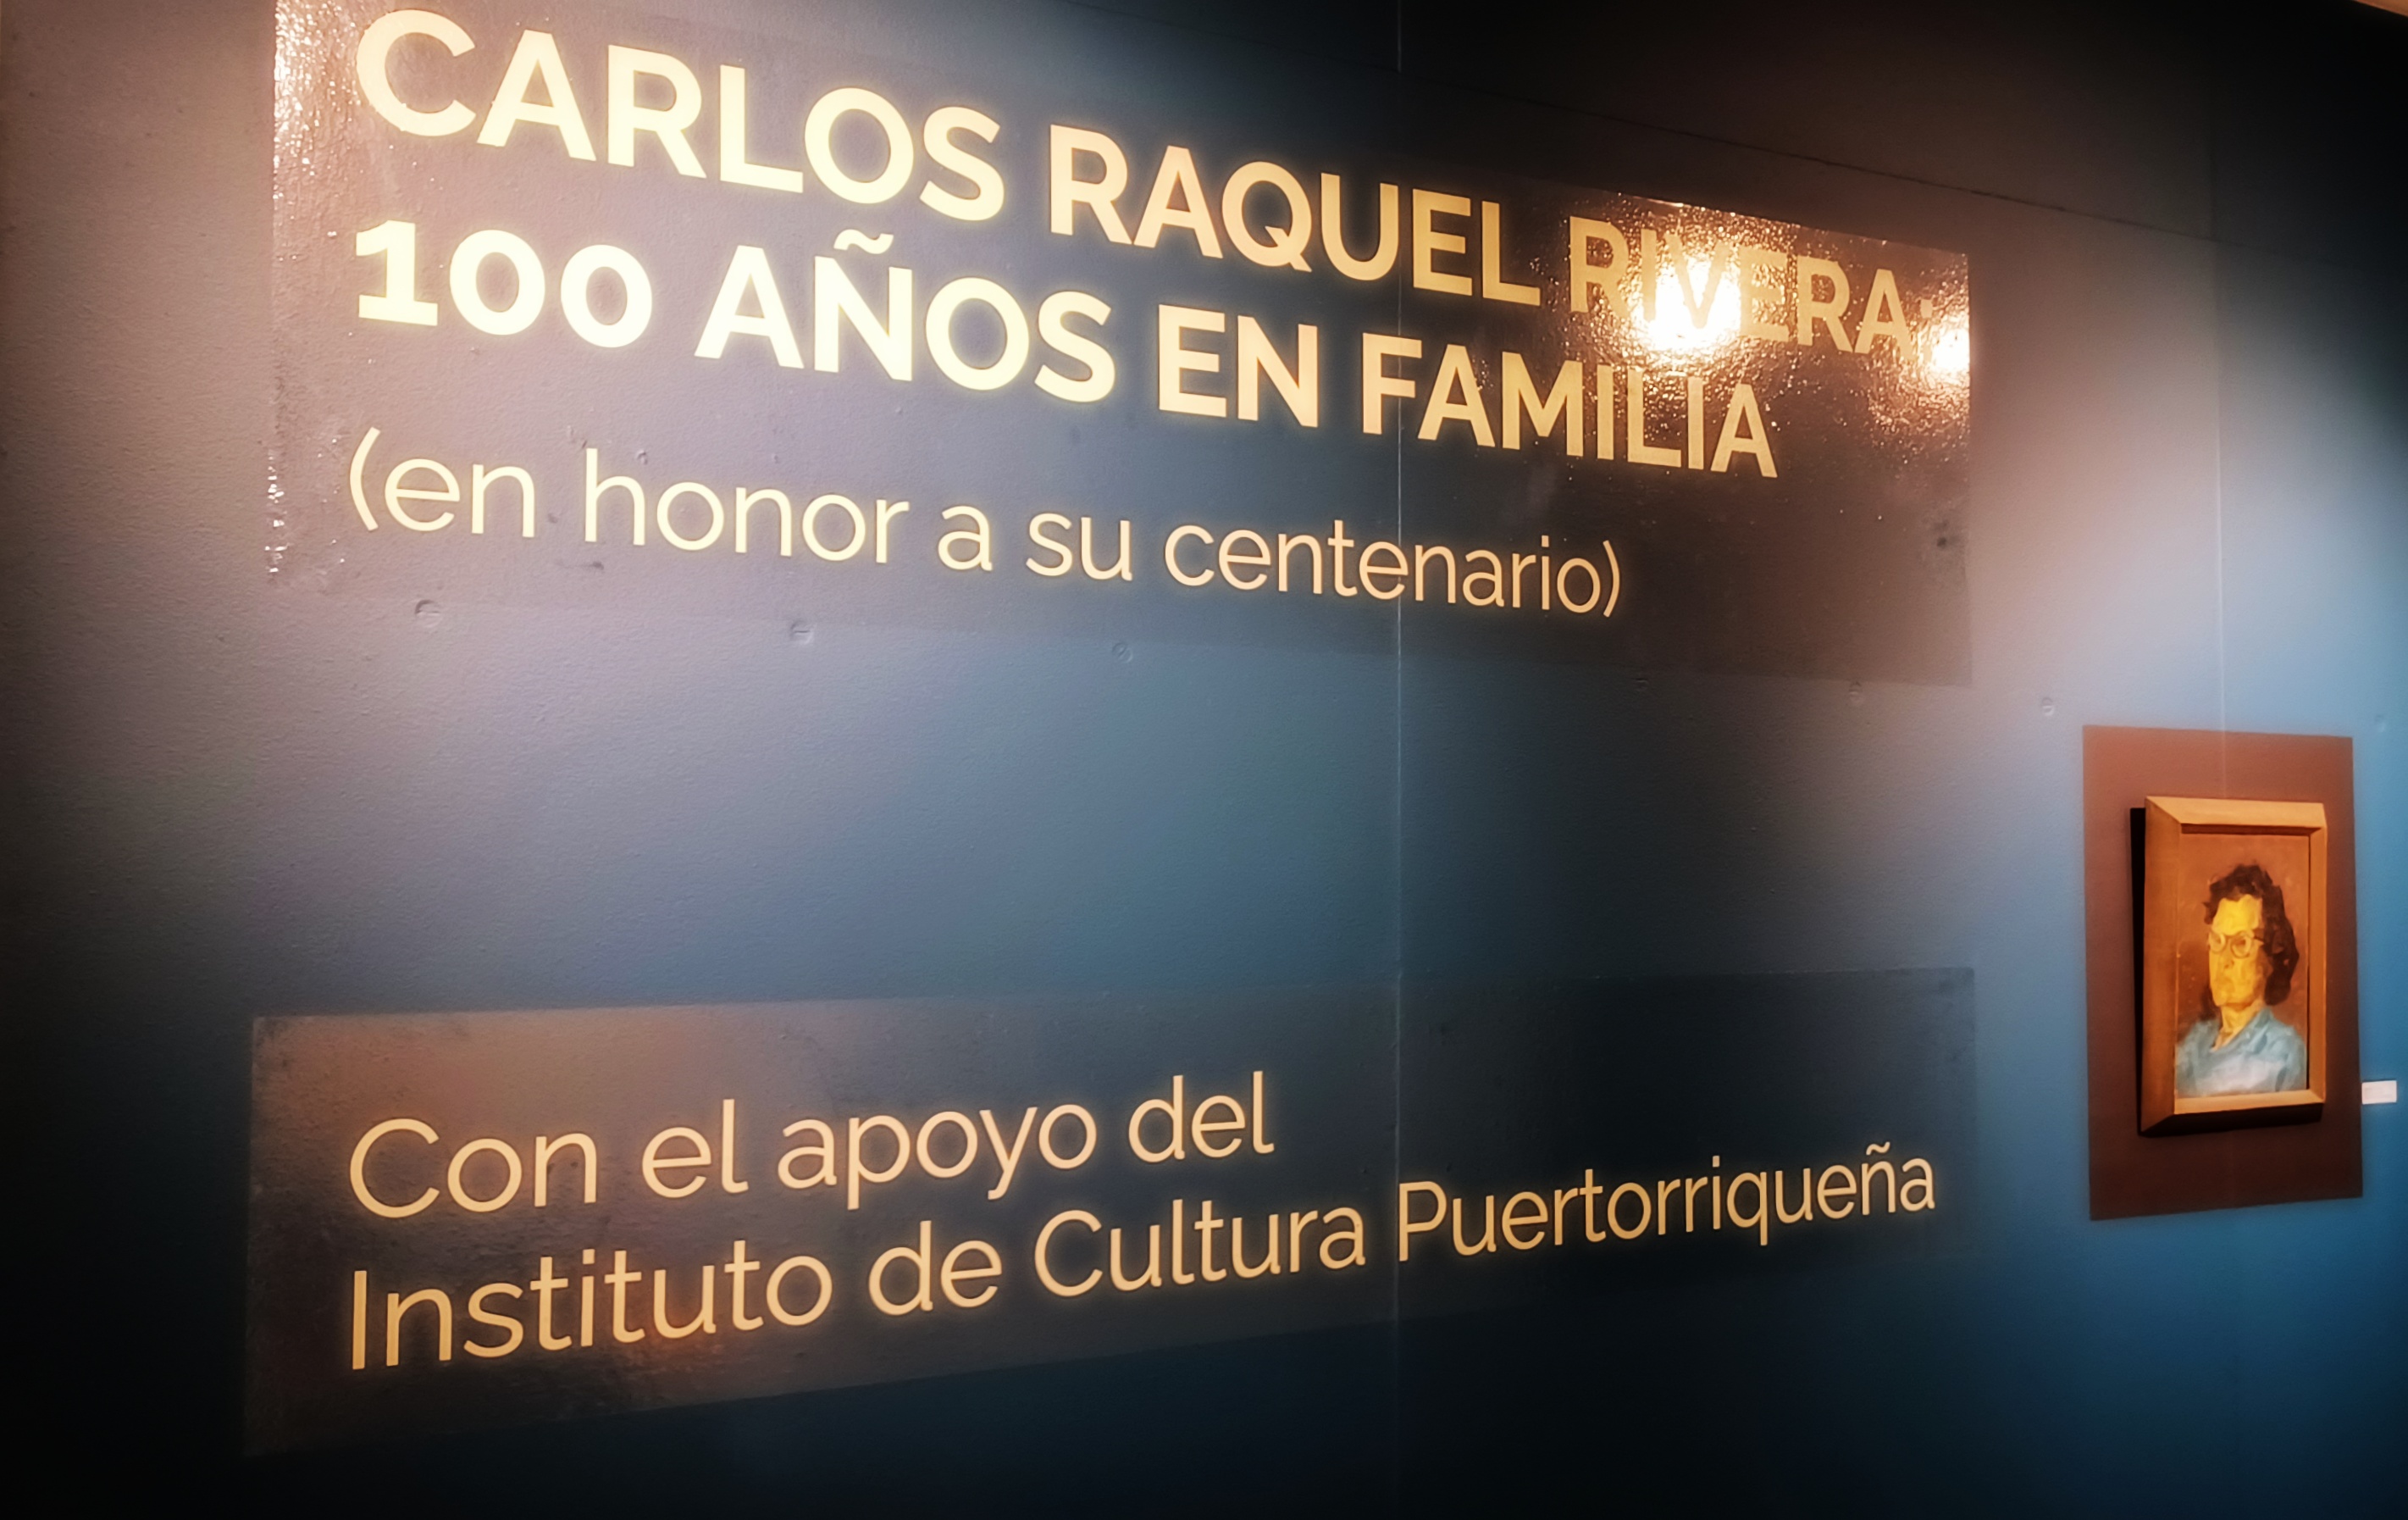 Mirada íntima y familiar al artista Carlos Raquel Rivera en la muestra, 100 años en familia en la Galería de Arte de la UPR de Carolina | Foto de Conexión Puerto Rico